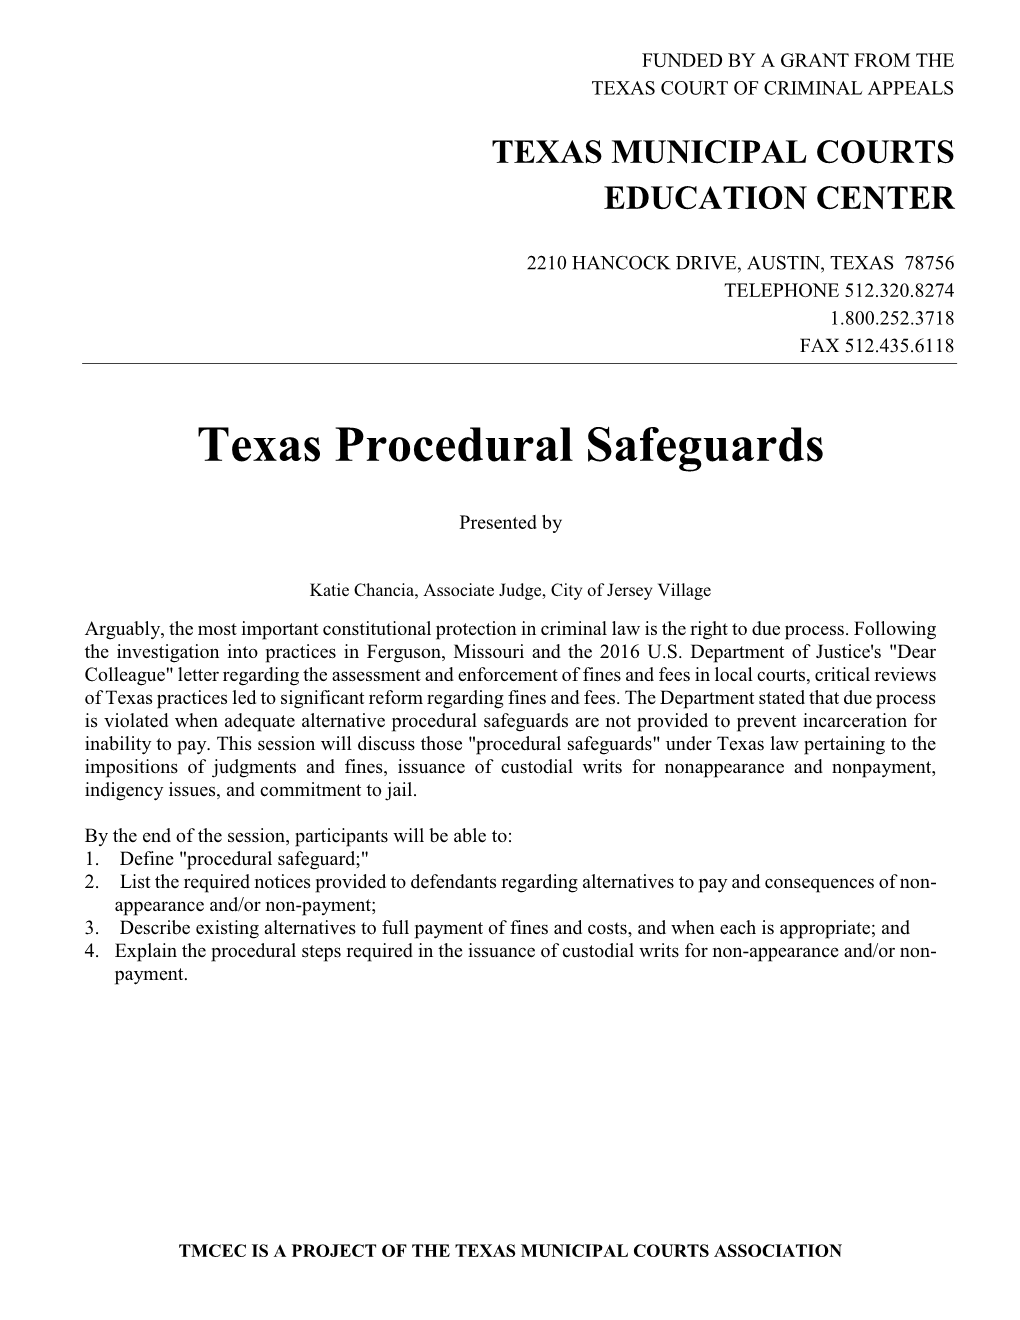 Texas Procedural Safeguards